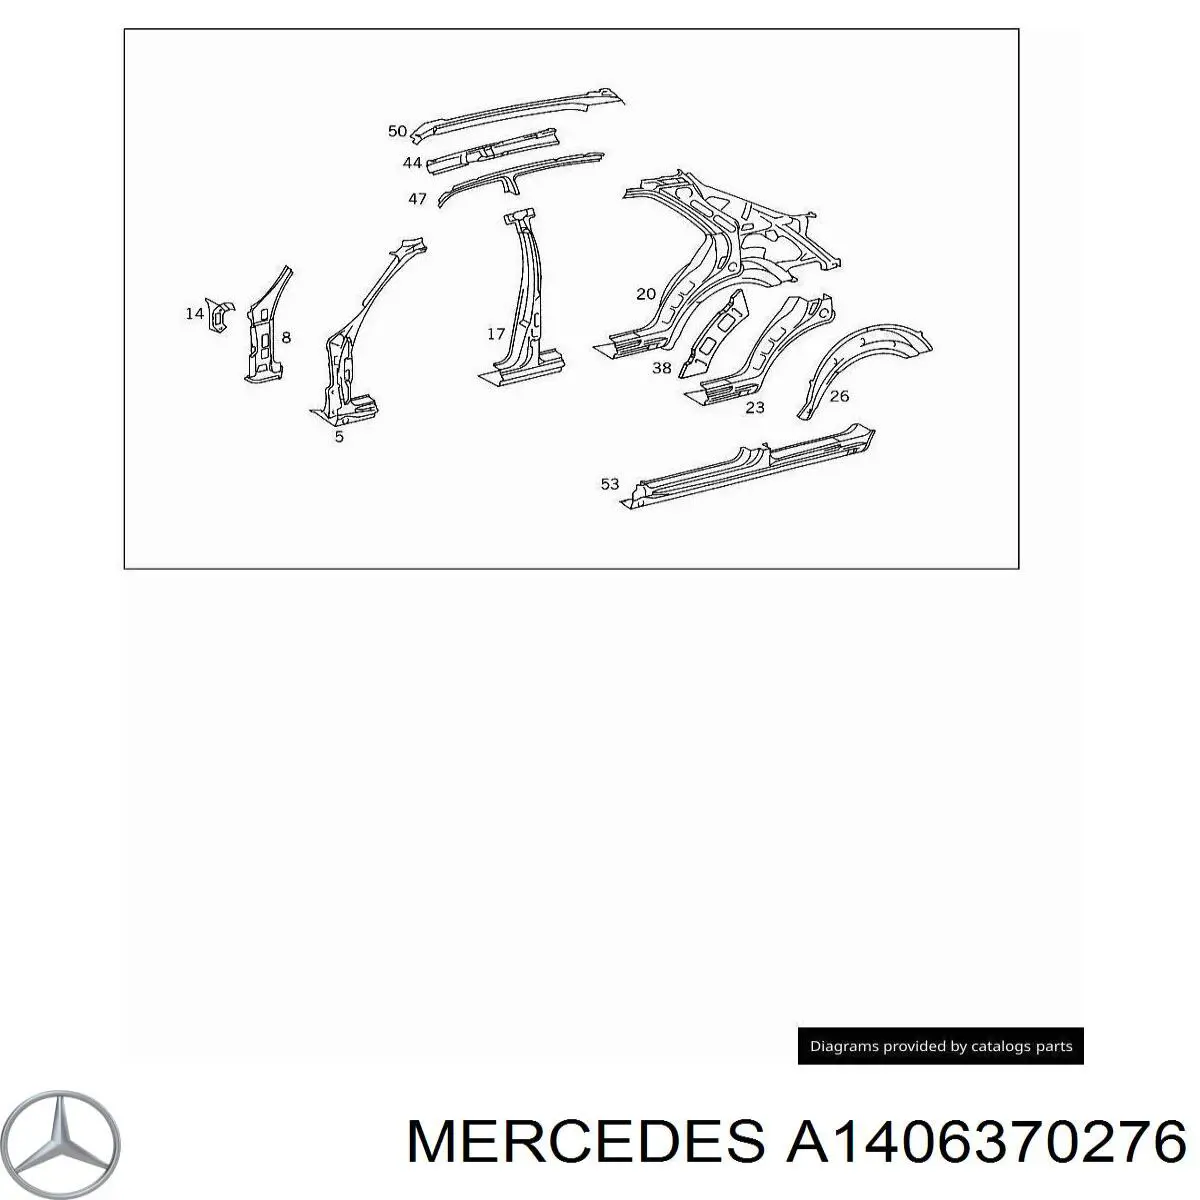 A1406370276 Mercedes арка крыла заднего правого